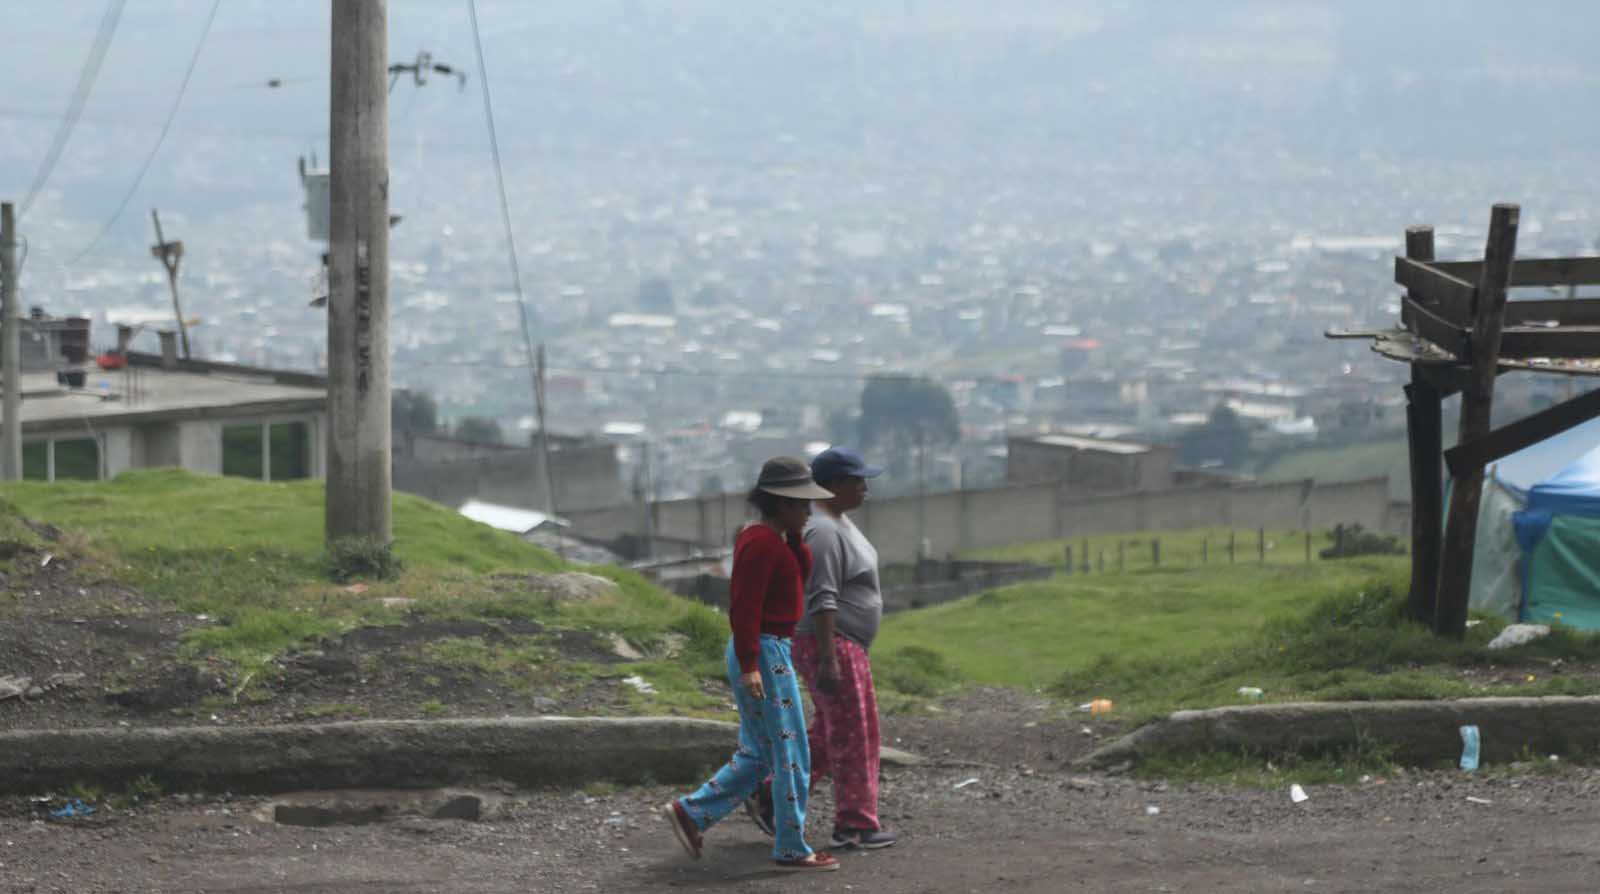 El frío intenso se siente en los barrios altos de Quito. Los vecinos visten prendas térmicas para tratar de conservar el calor. Foto: Julio Estrella / EL COMERCIO